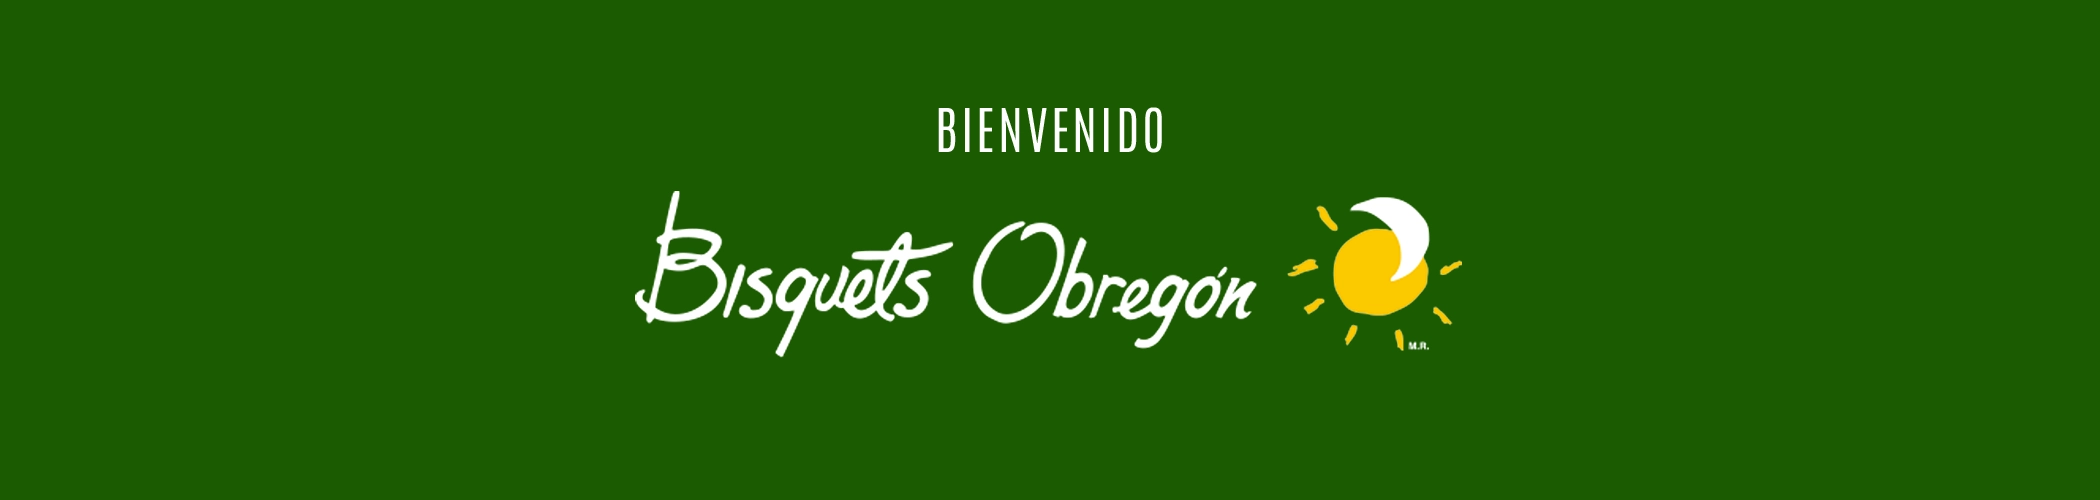 bisquets-obregon